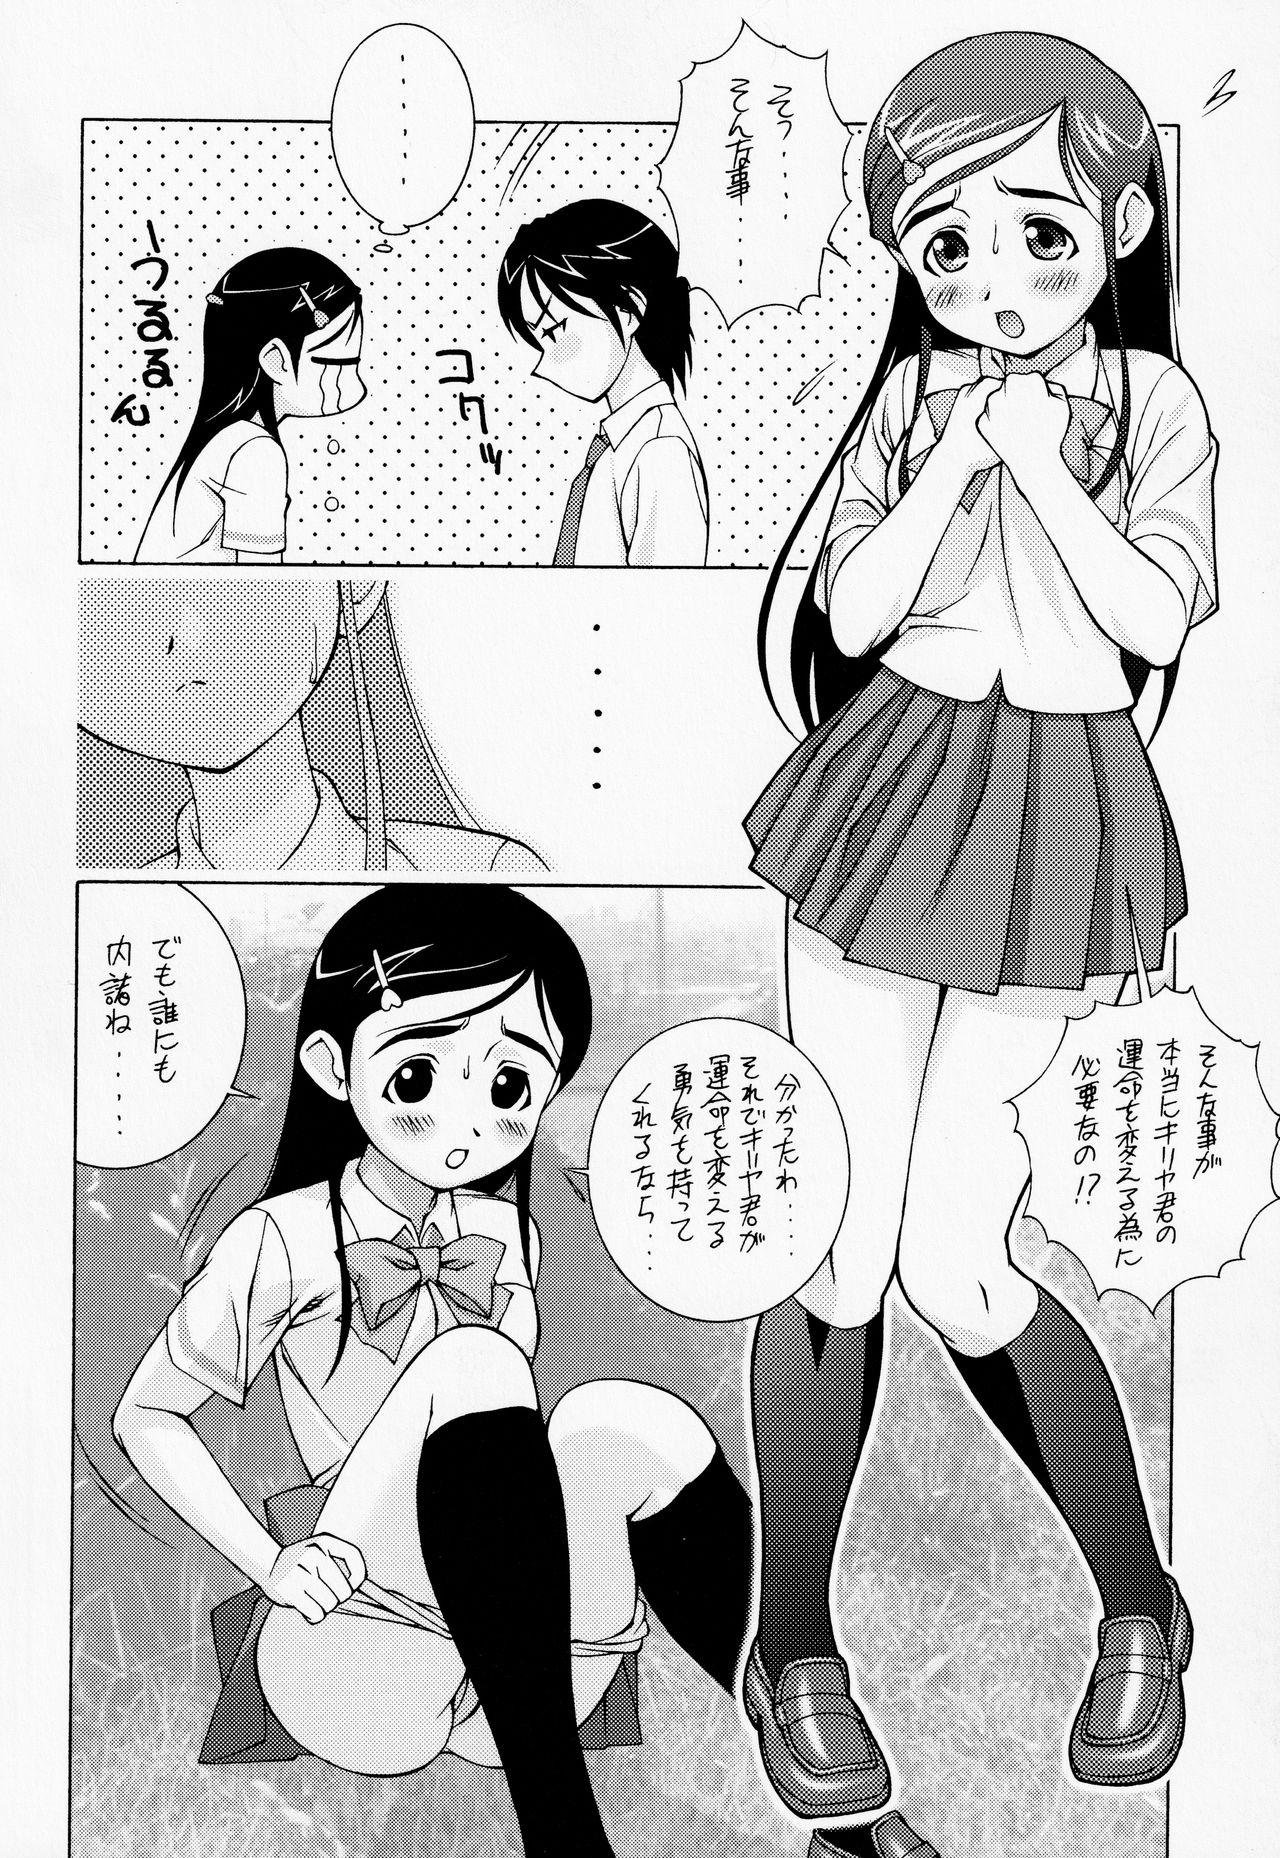 Art Shiroi Koibito <Kanzenhan> - Futari wa pretty cure Orgame - Page 5